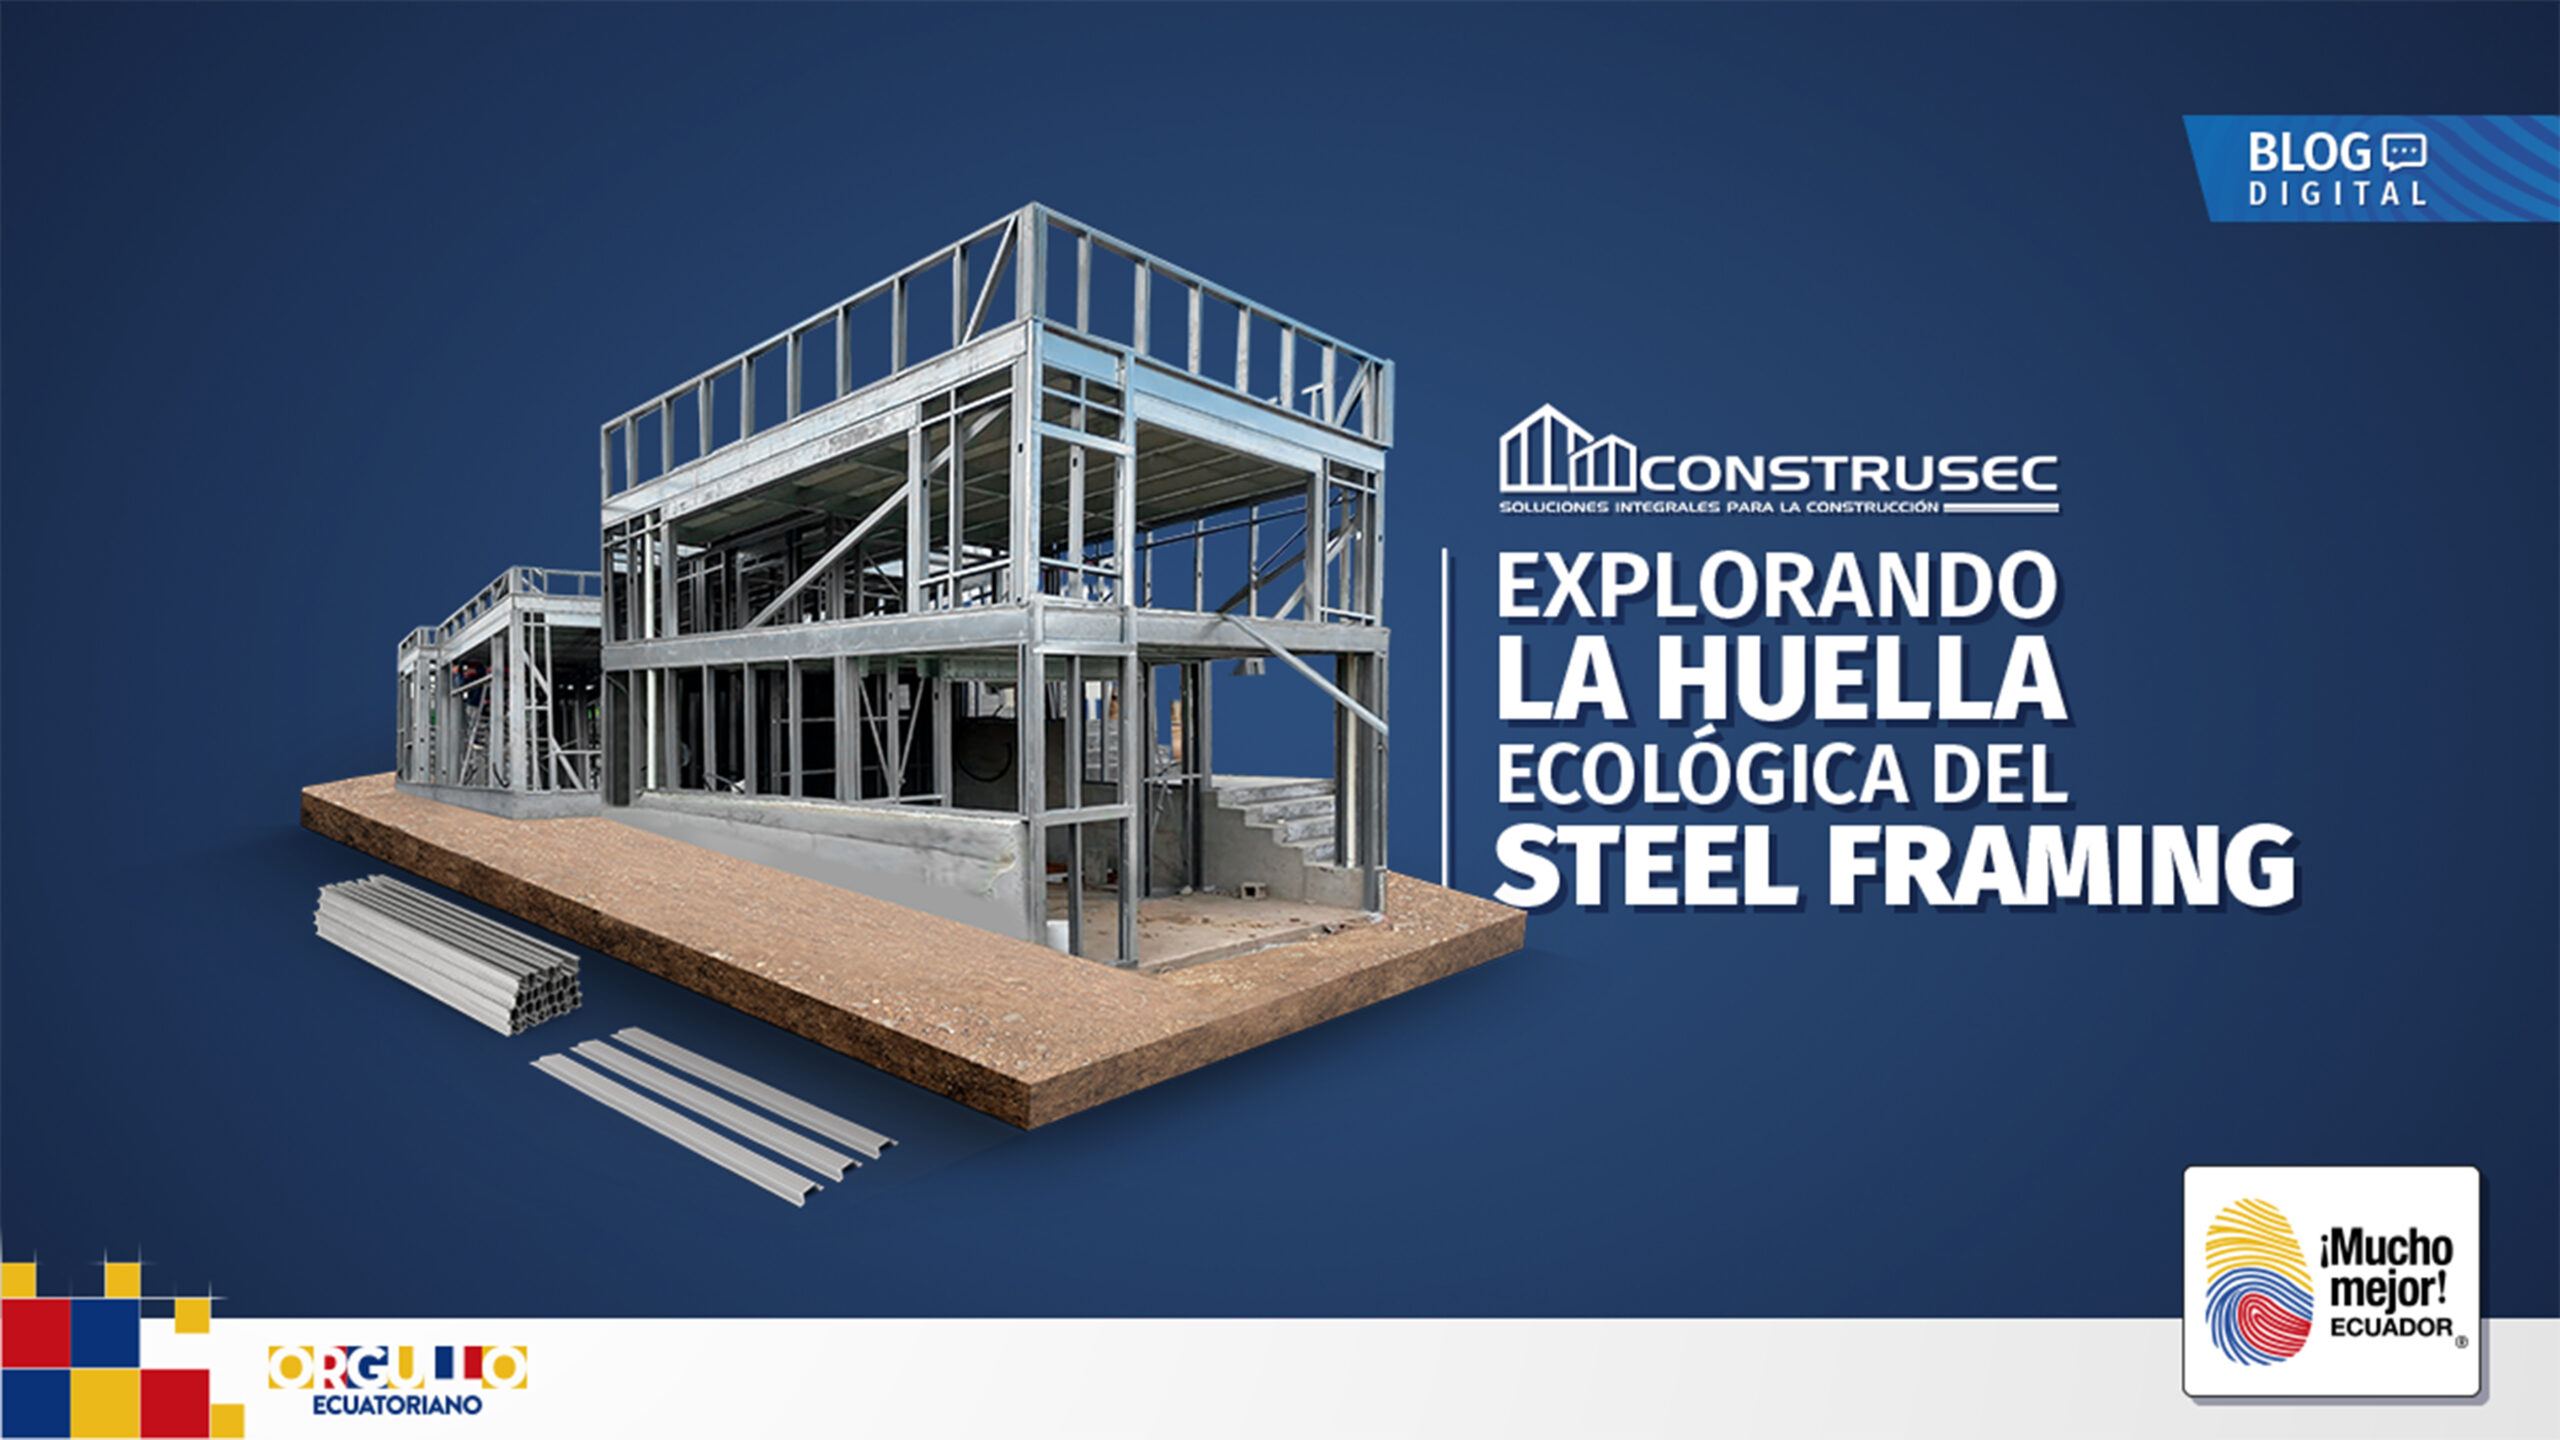 Steel Framing colabora con el medio ambiente